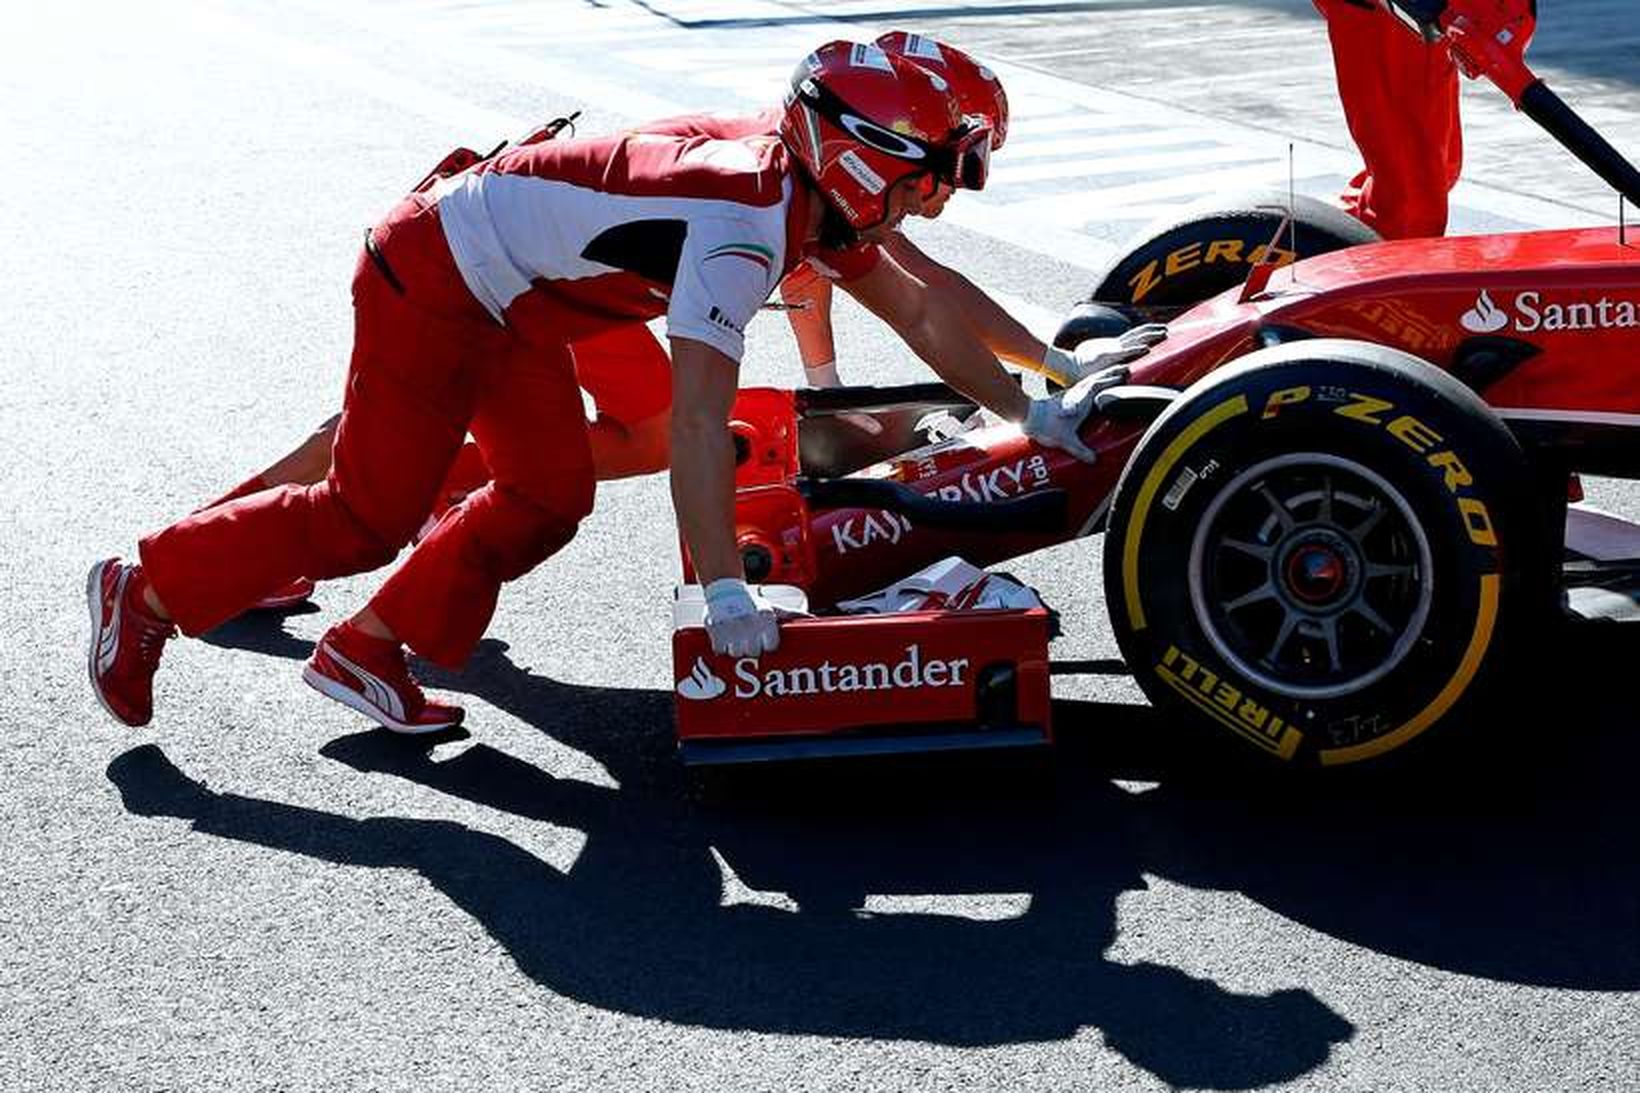 Liðsmenn Ferrari ýta bíl Räikkönen inn í bílskúr í sjotsí.